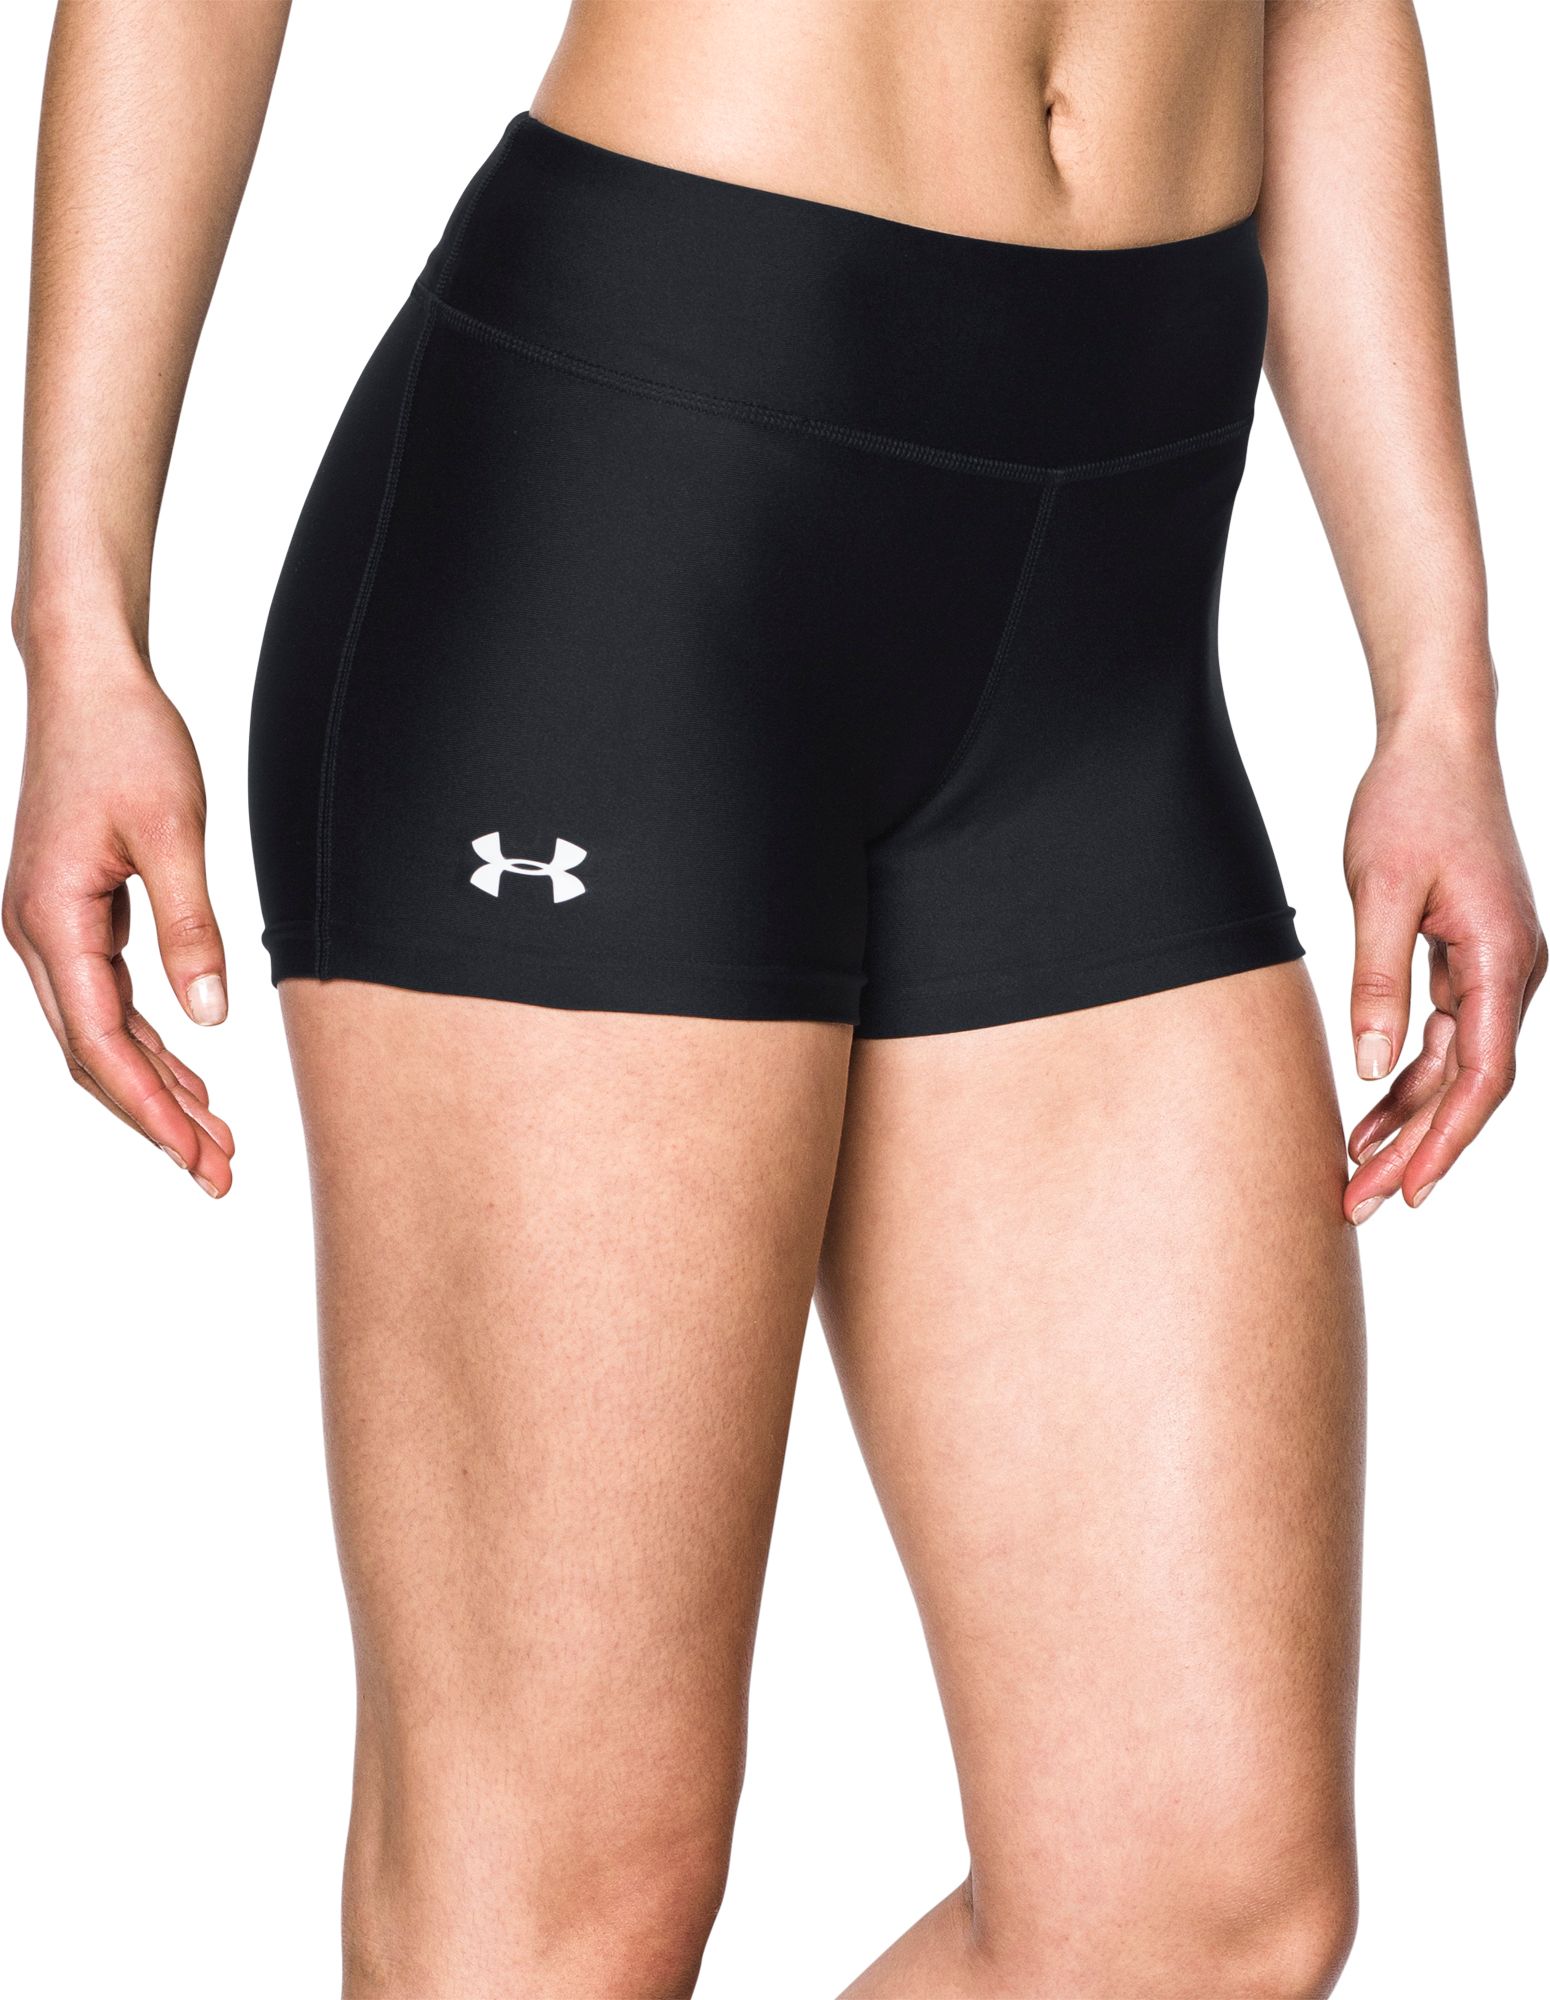 spandex shorts under shorts